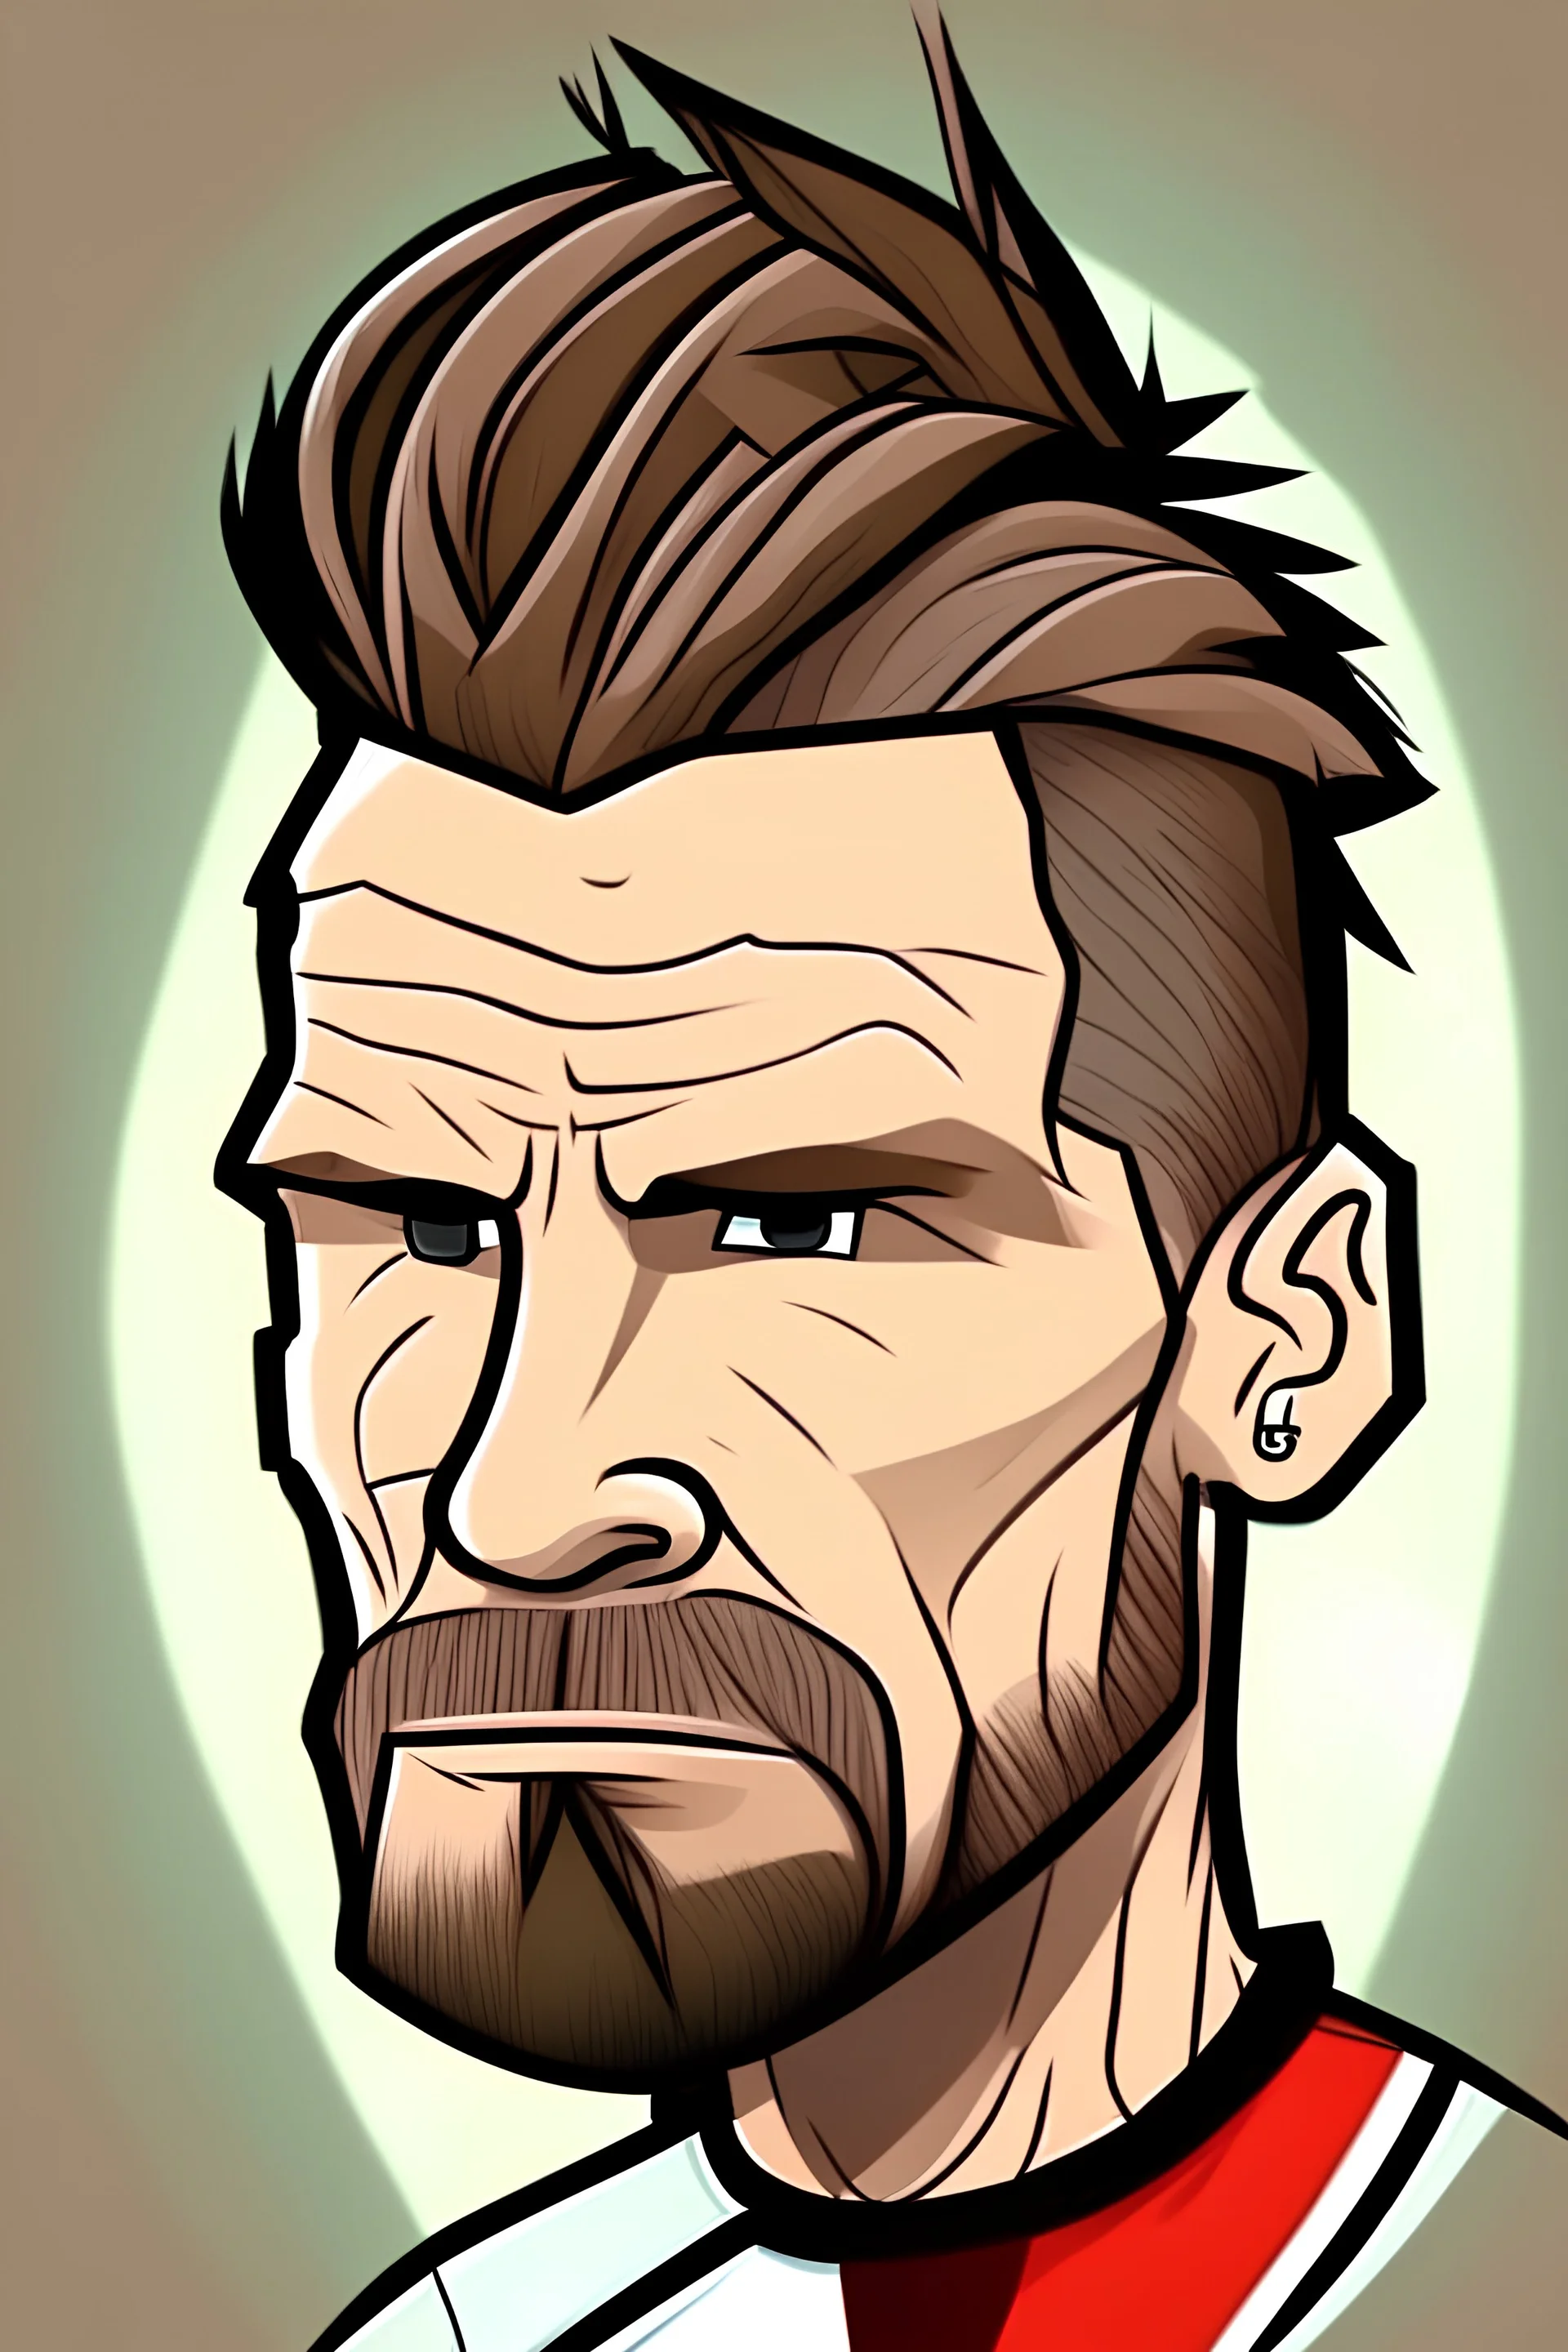 David Beckham Former football player cartoon 2d